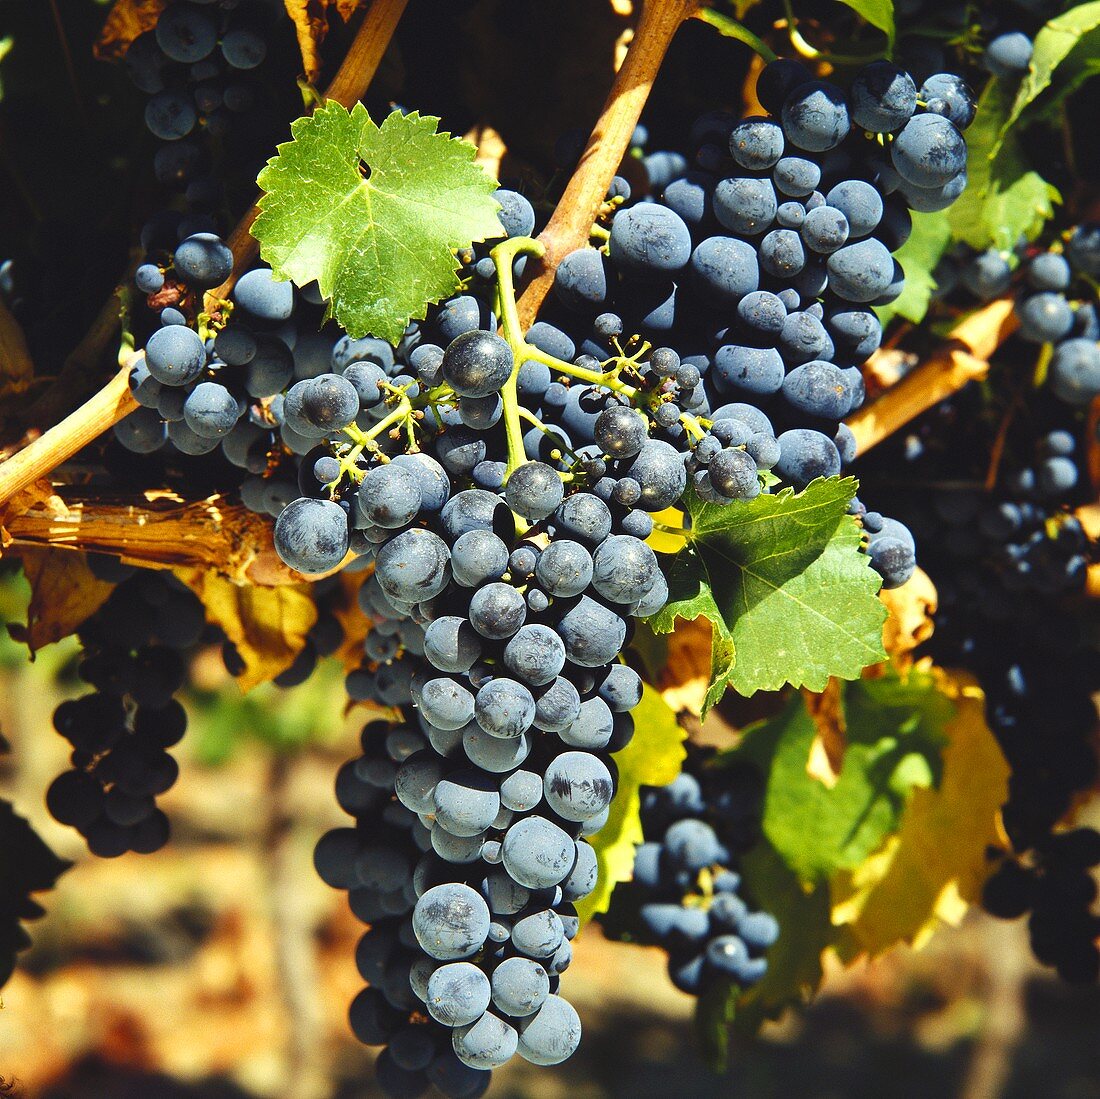 Cabernet-Sauvignon grapes in Maipo Valley in Chile